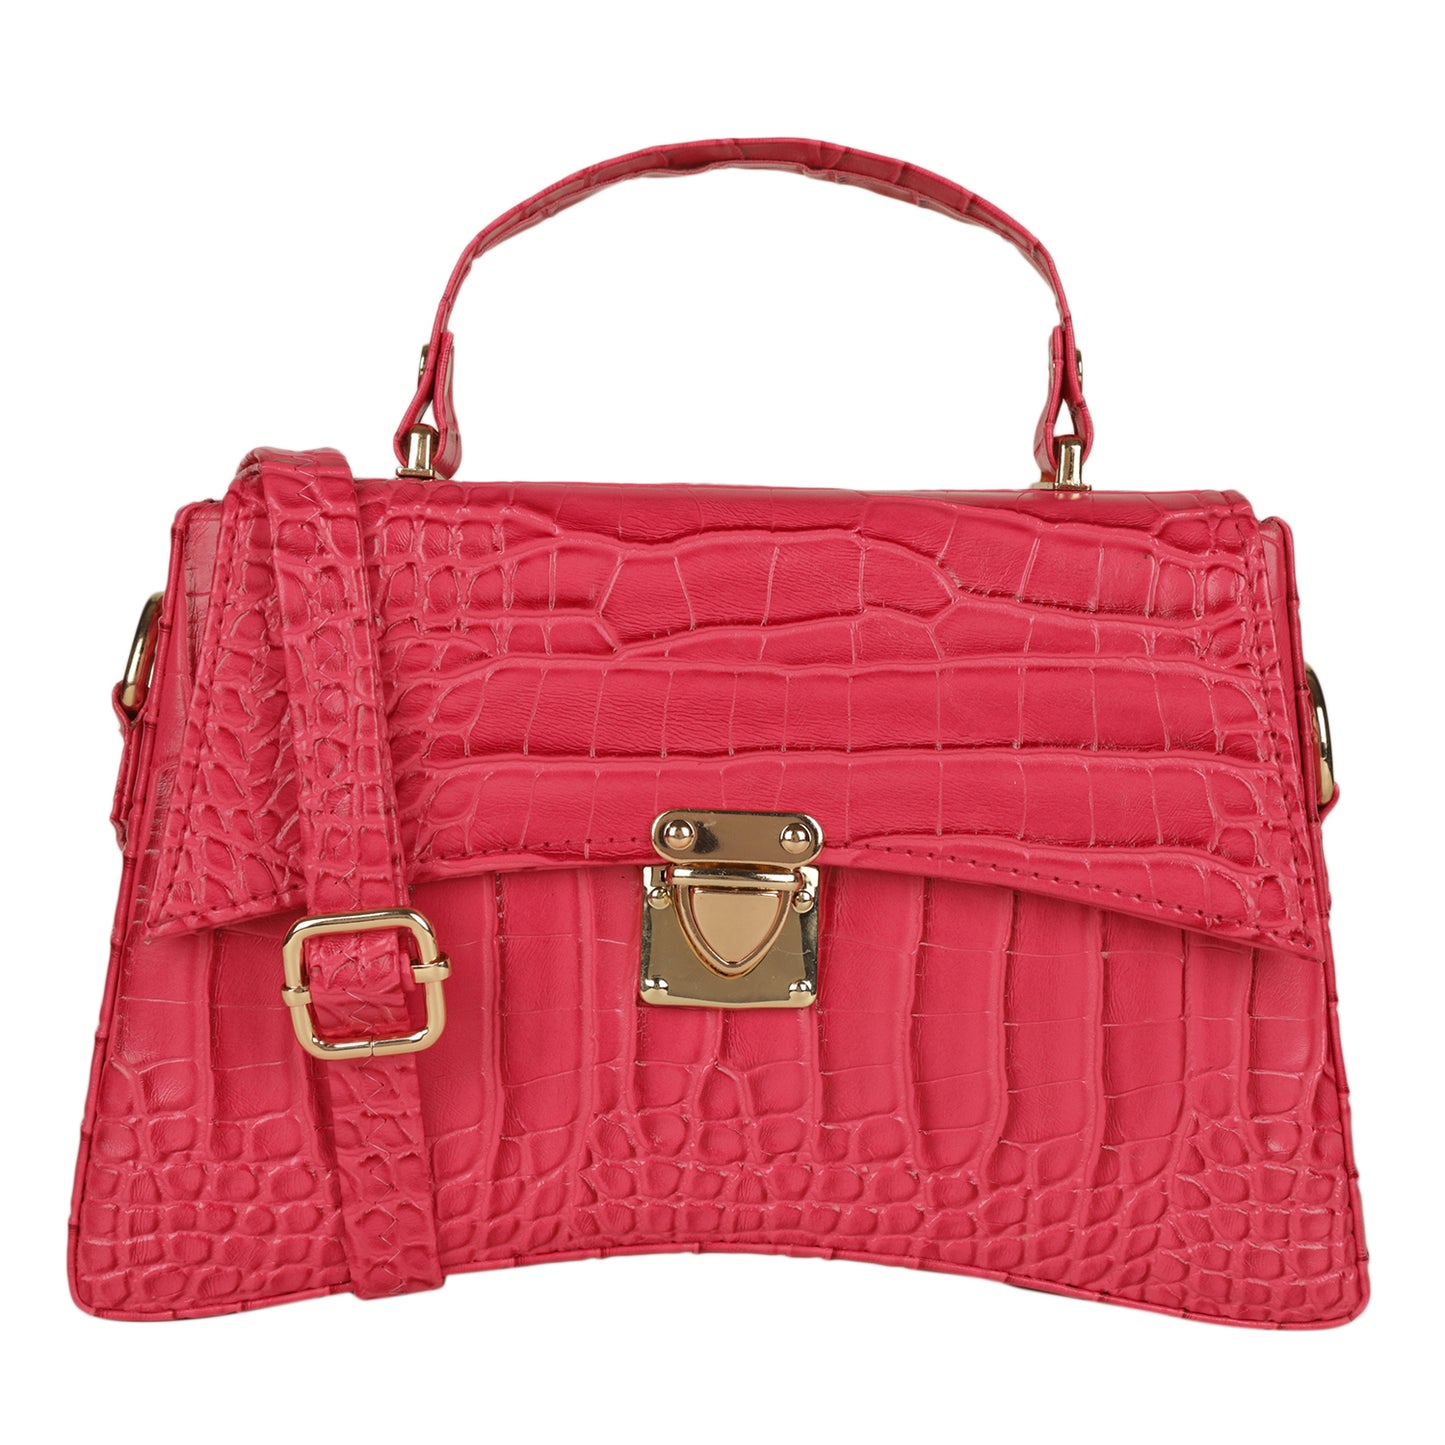 MINI WESST Women's Pink Handbags(MWHB091PK)